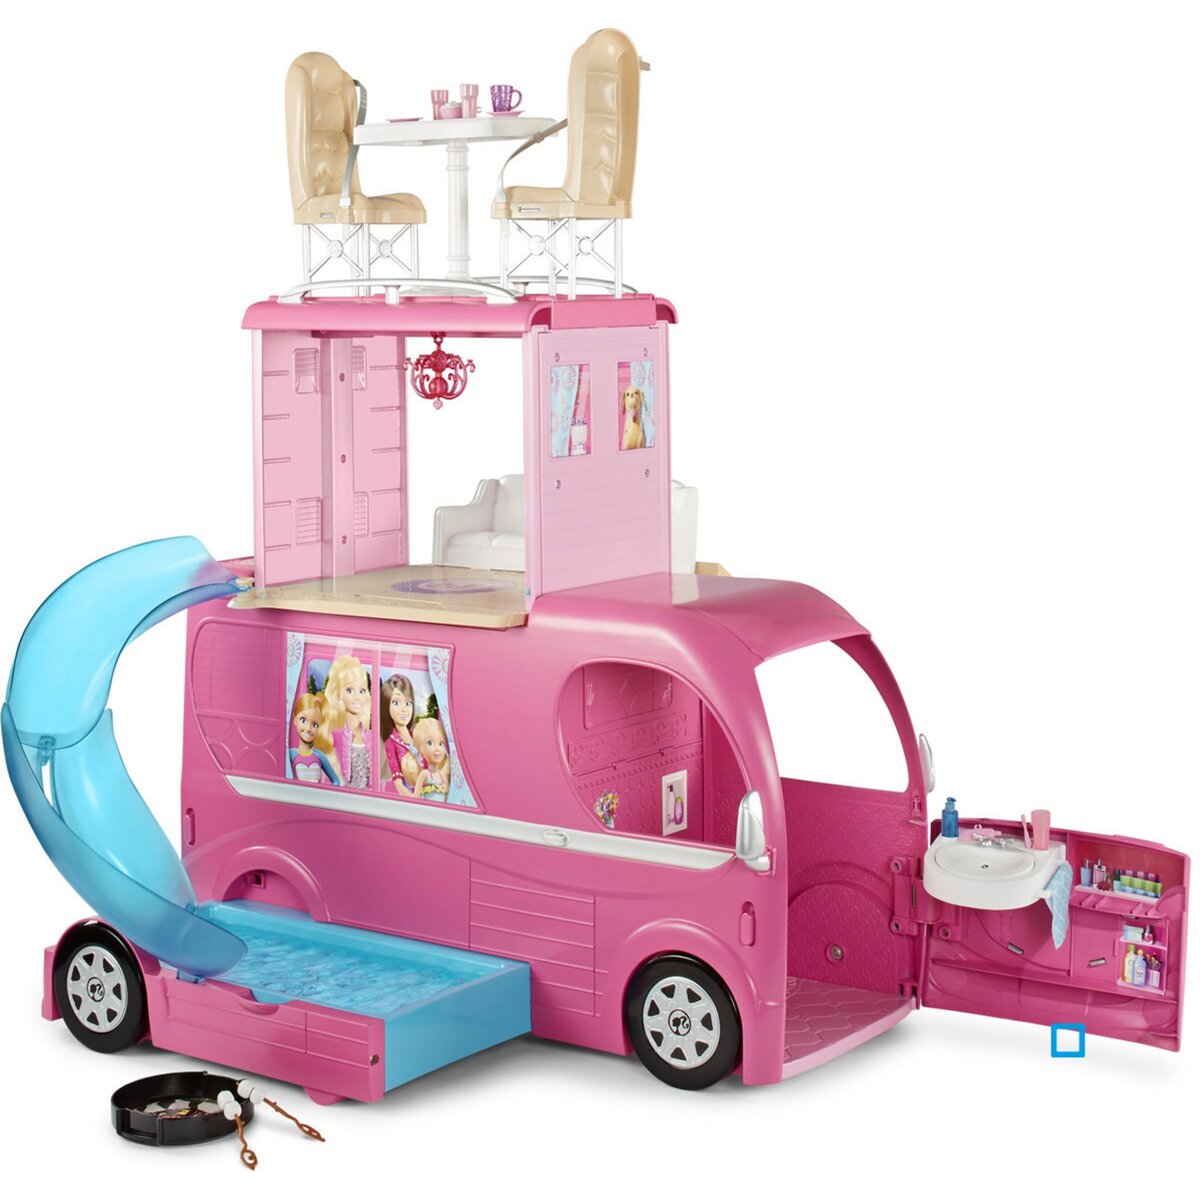 MATTEL Camping-car duplex Barbie